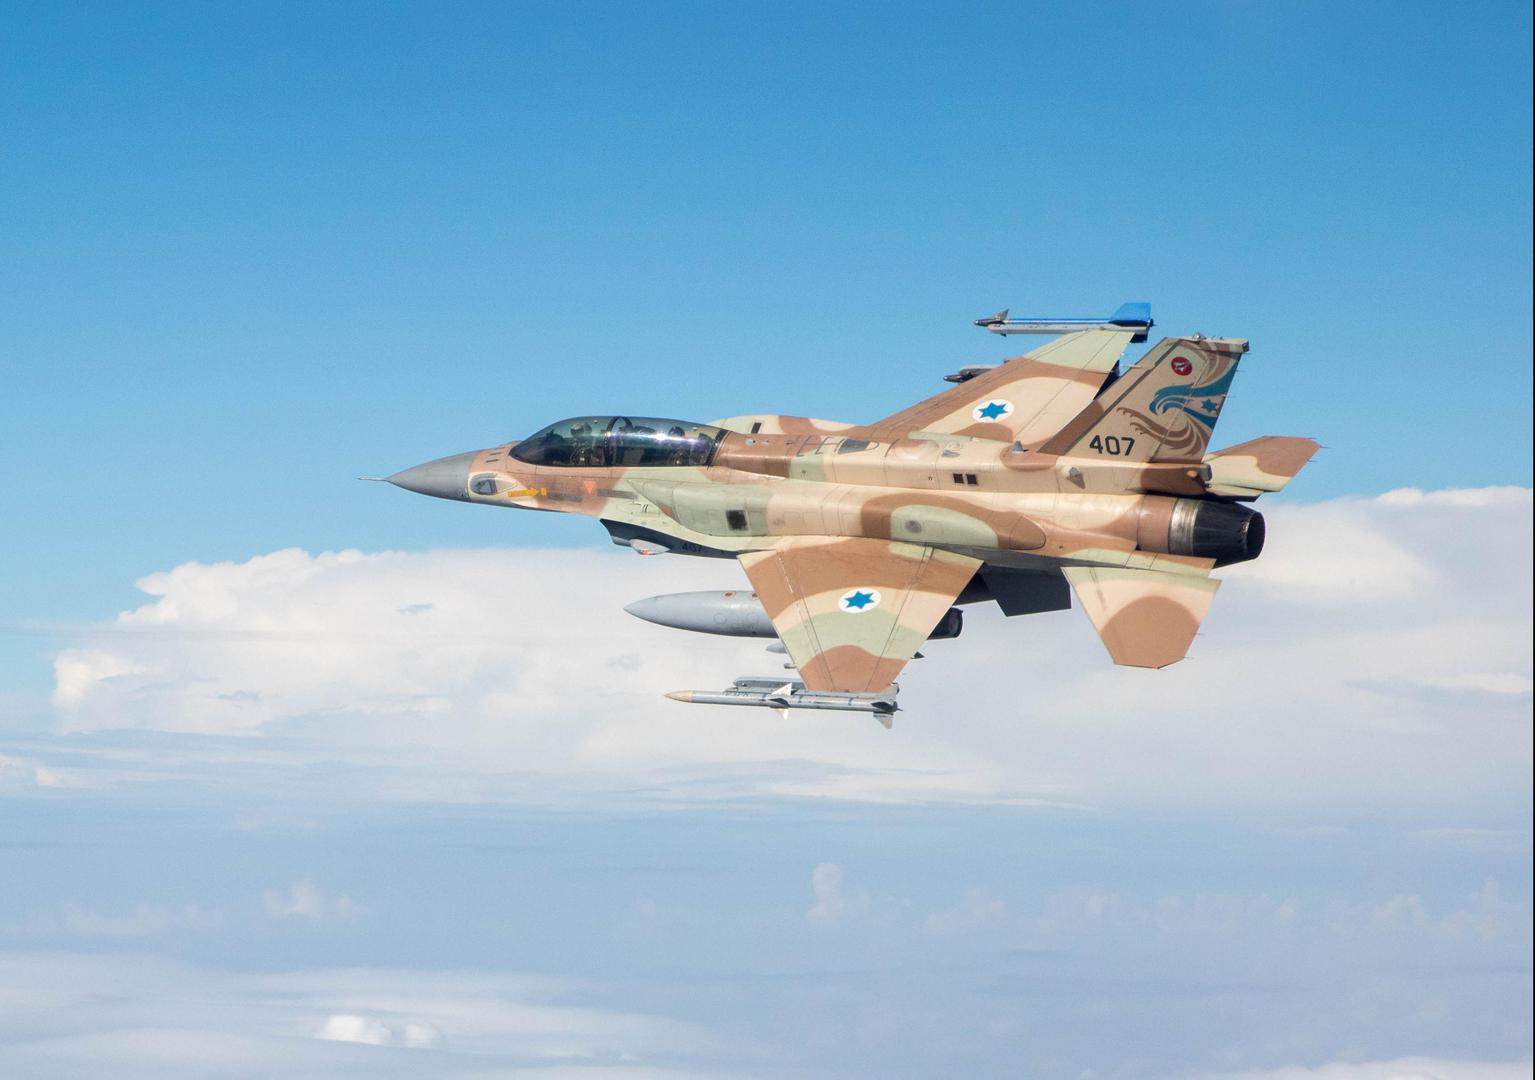 Barak je znatno modernizirana verzija Lockheed Martinova F-16 C/D, u kojemu se nalazi izraelska avionika, samoobrambeni sustavi, radari i napredni projektili “zrak-zrak” poput Python 4 i 5, te projektili “zrak-zemlja” Popeye i Spice. Ima znatno povećan domet i nosi 7,5 tona oružja